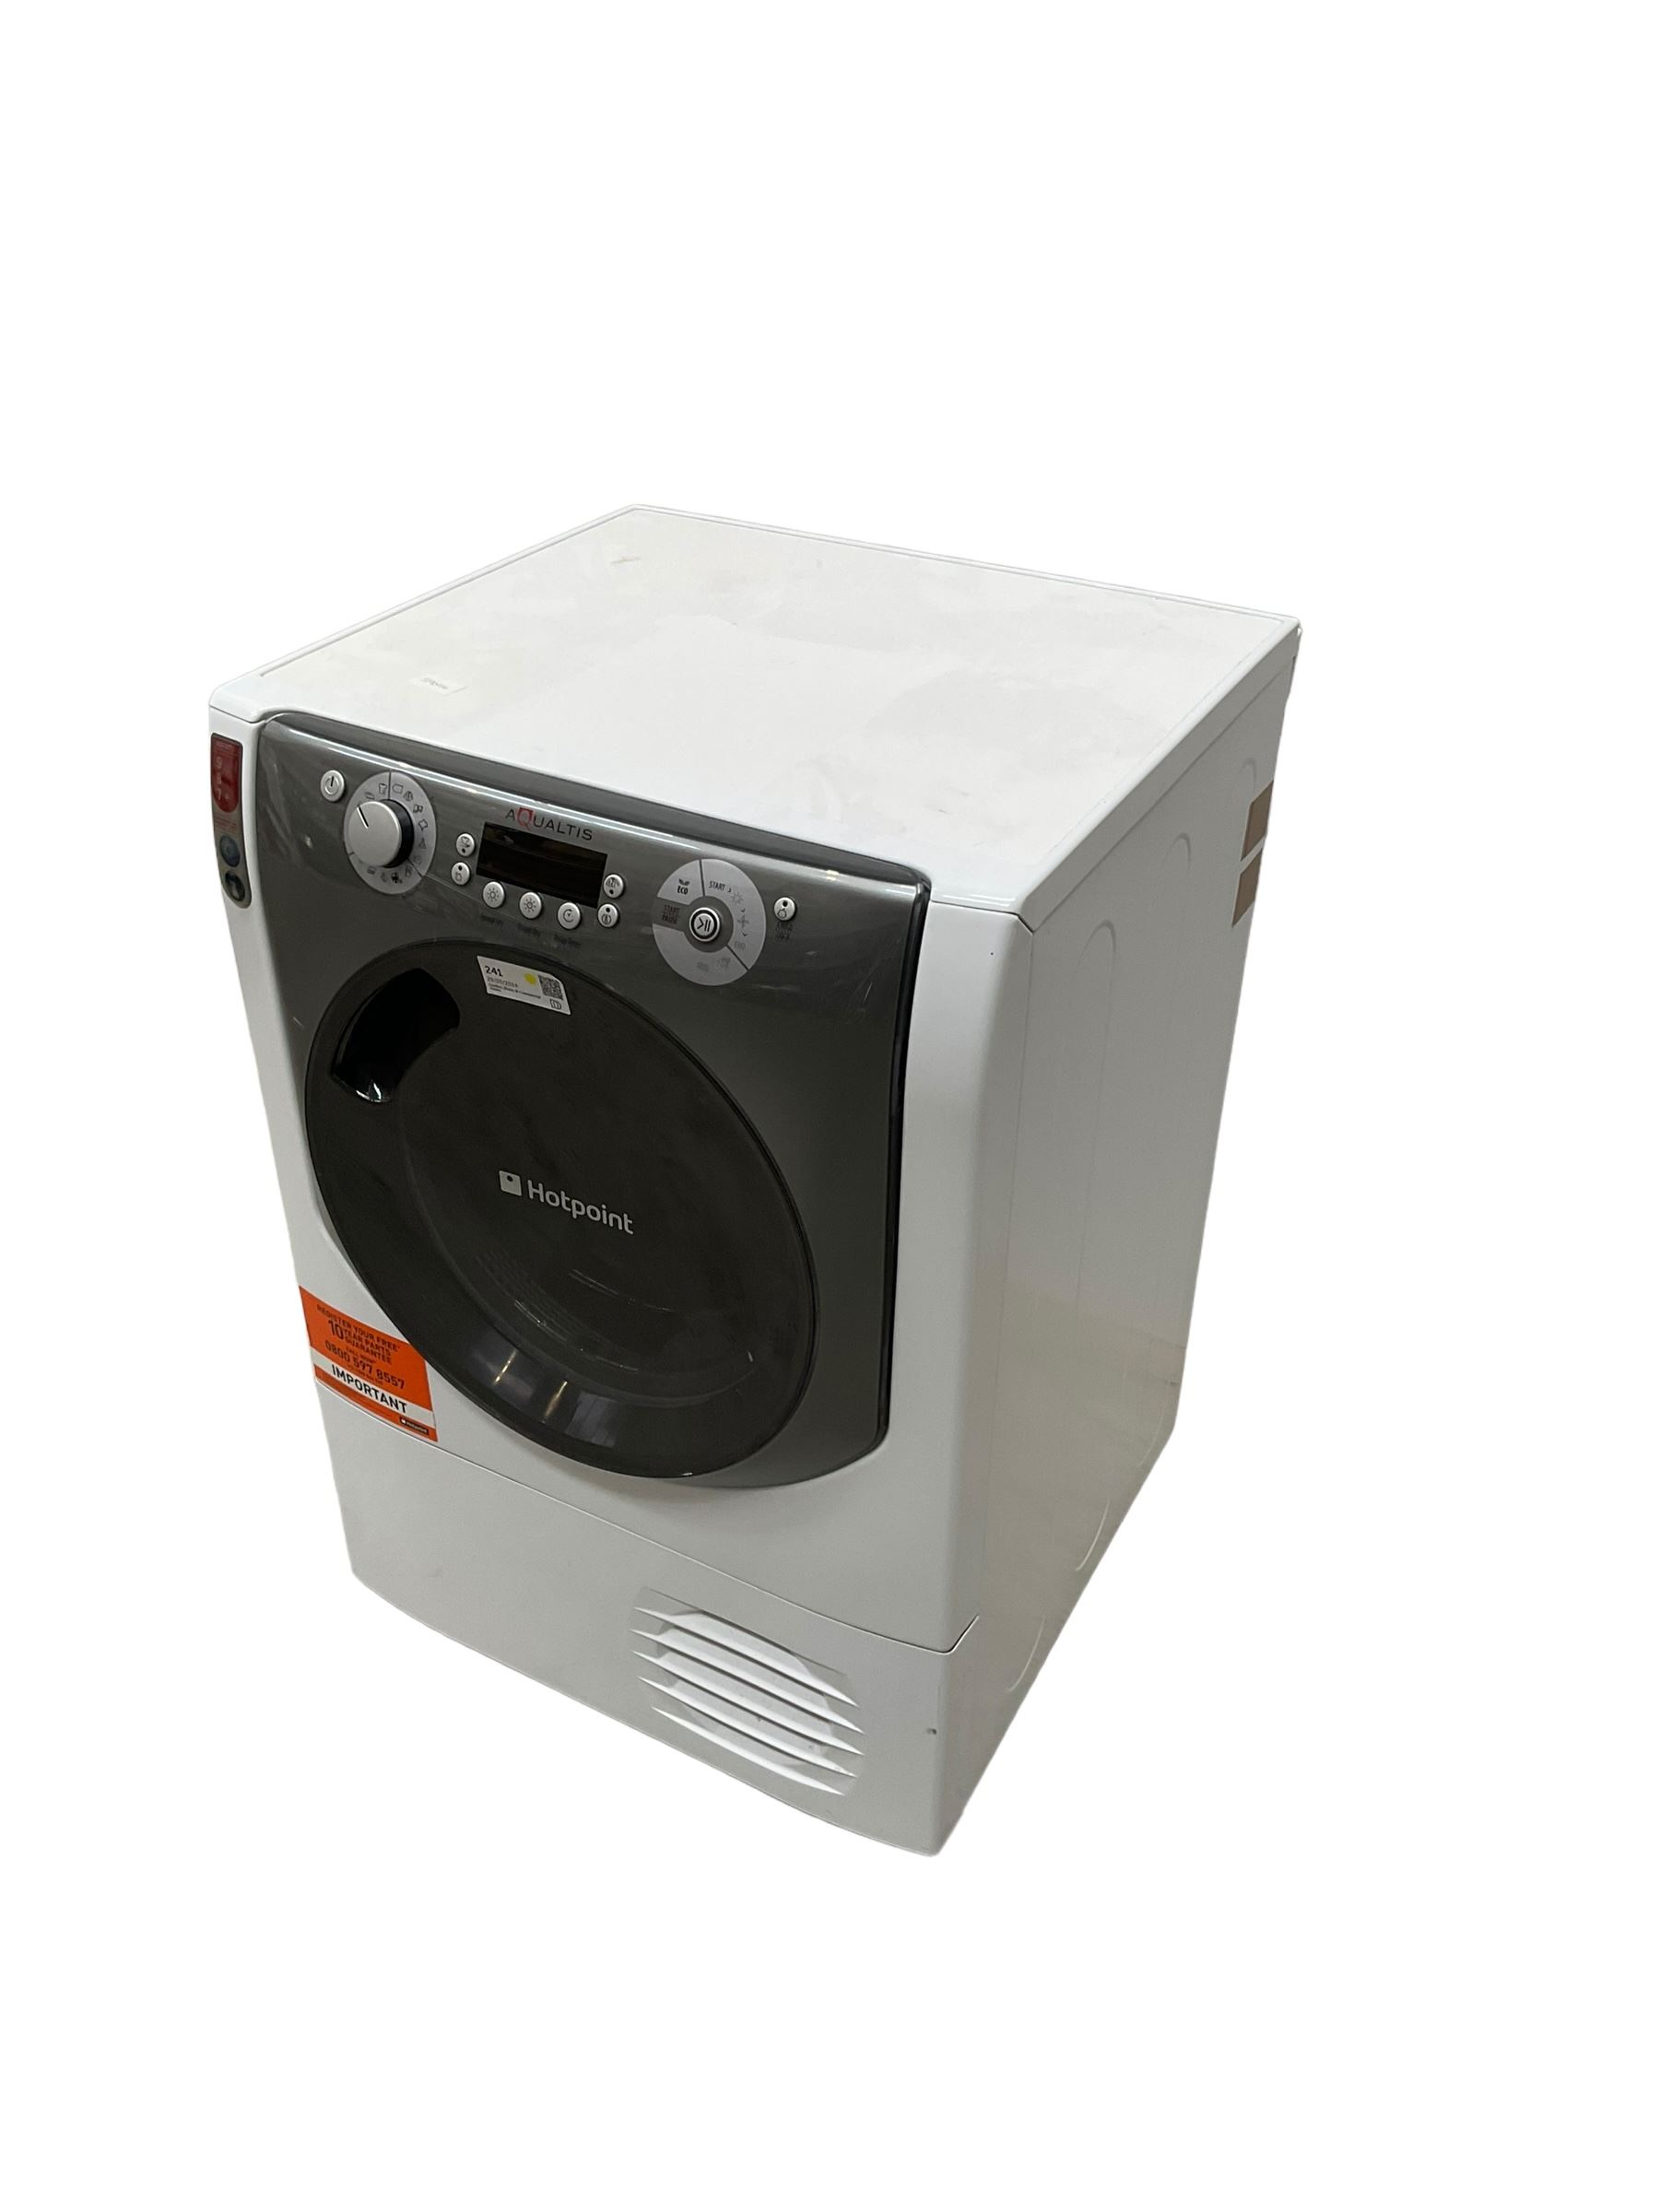 Hotpoint Aqualtis 9kg condenser tumble dryer - Image 2 of 4